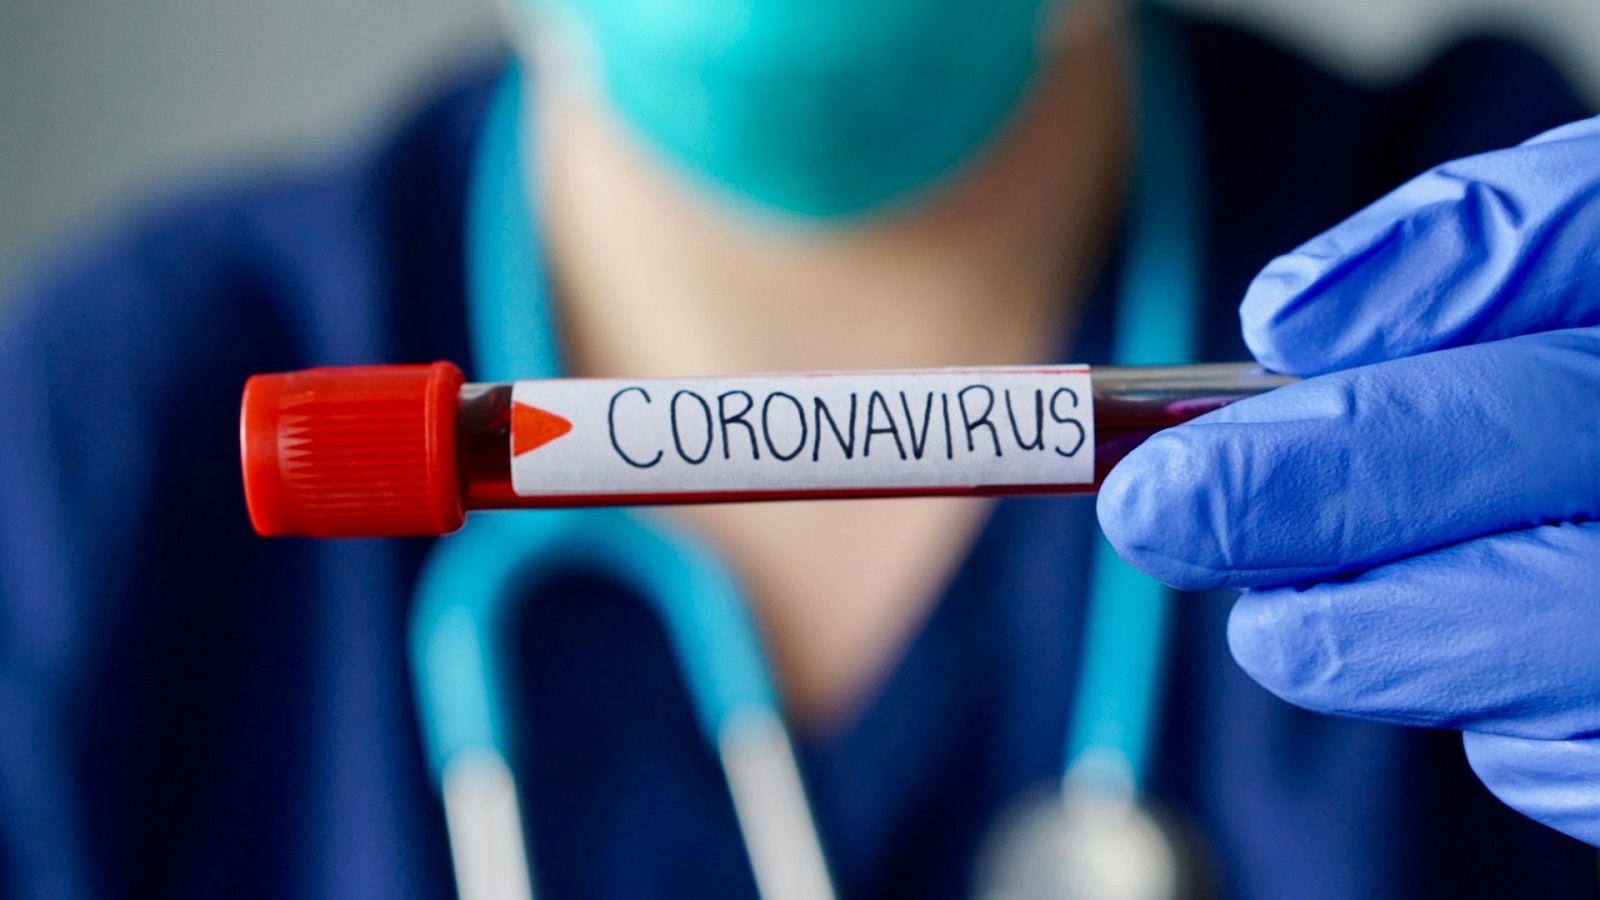 Coronavirus| El plasma hiperinmune podría reducir el ingreso en UCI o fallecimiento por coronavirus